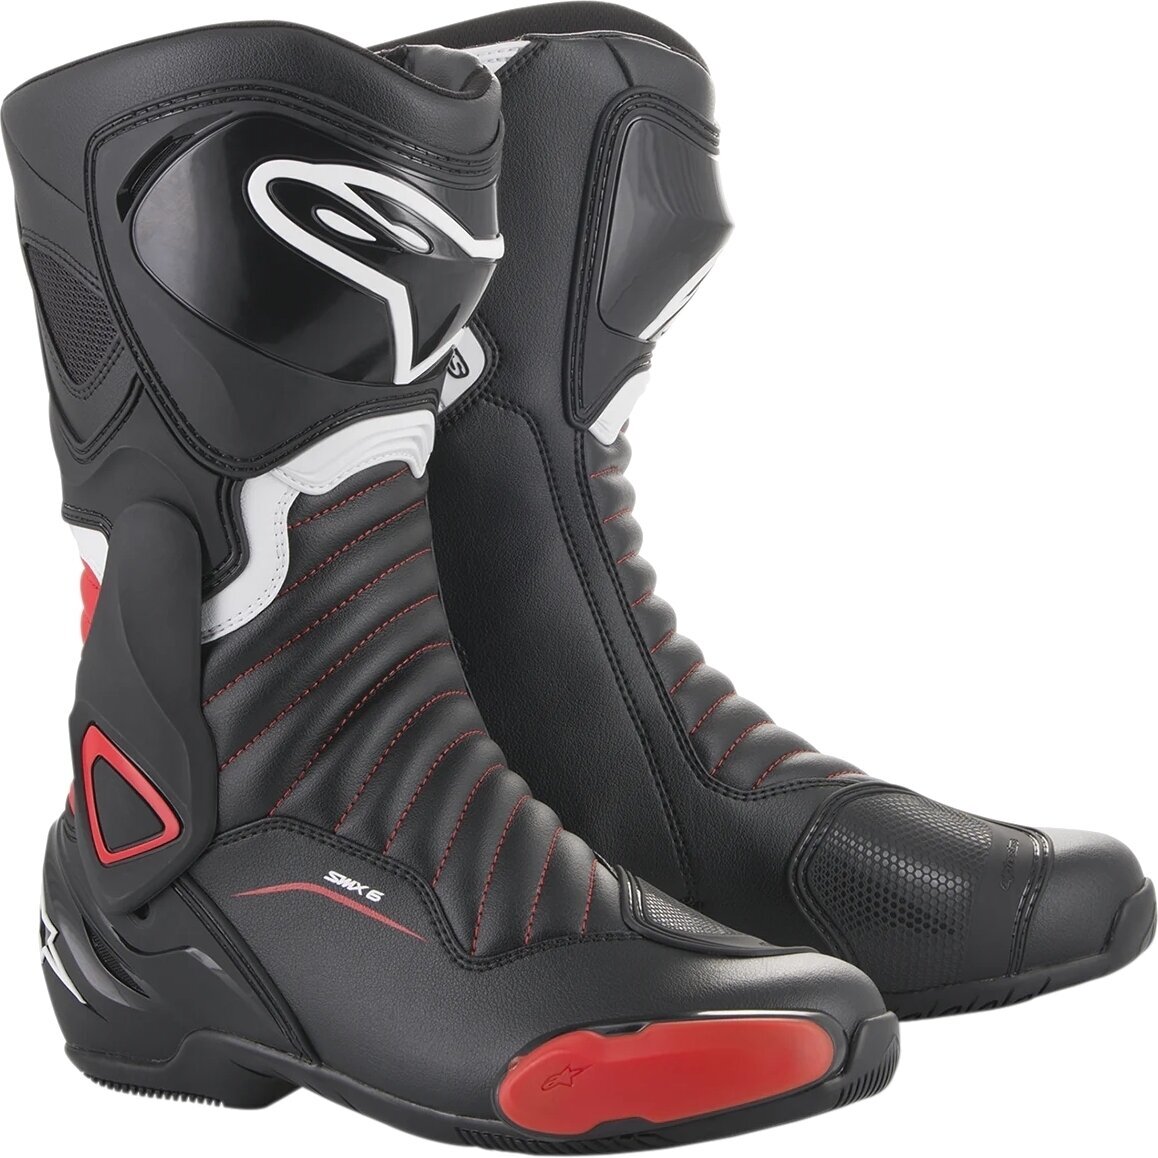 Boty Alpinestars SMX-6 V2 Boots Black/Gray/Red Fluo 37 Boty